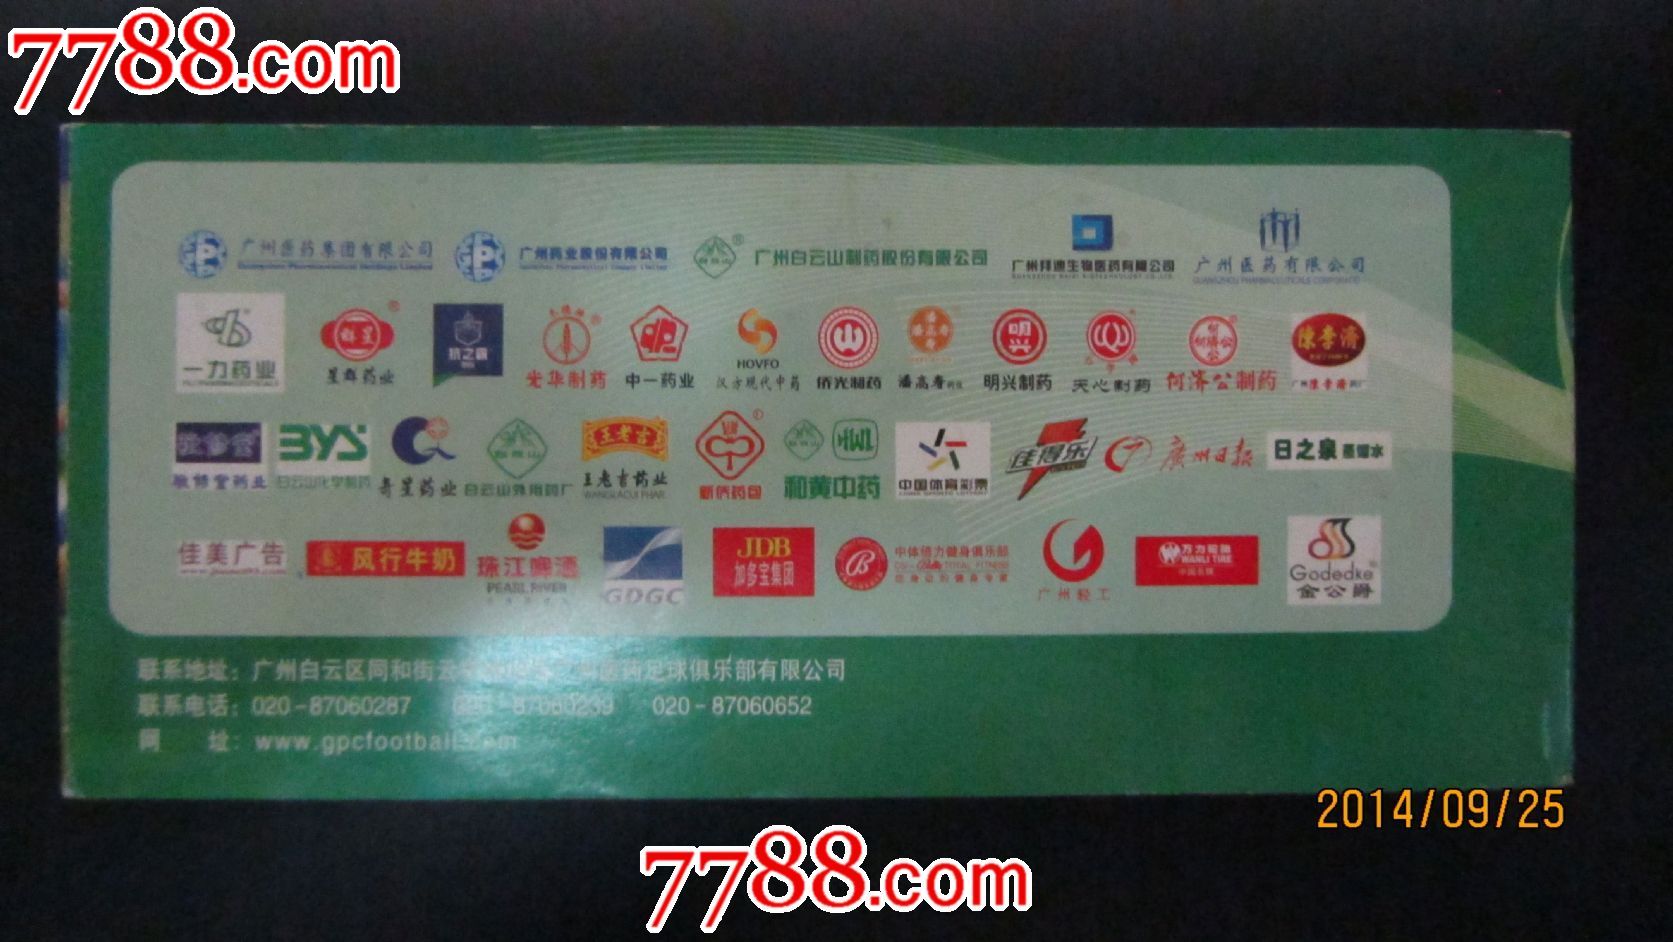 中国足球协会甲级联赛-价格:2元-se26119322-